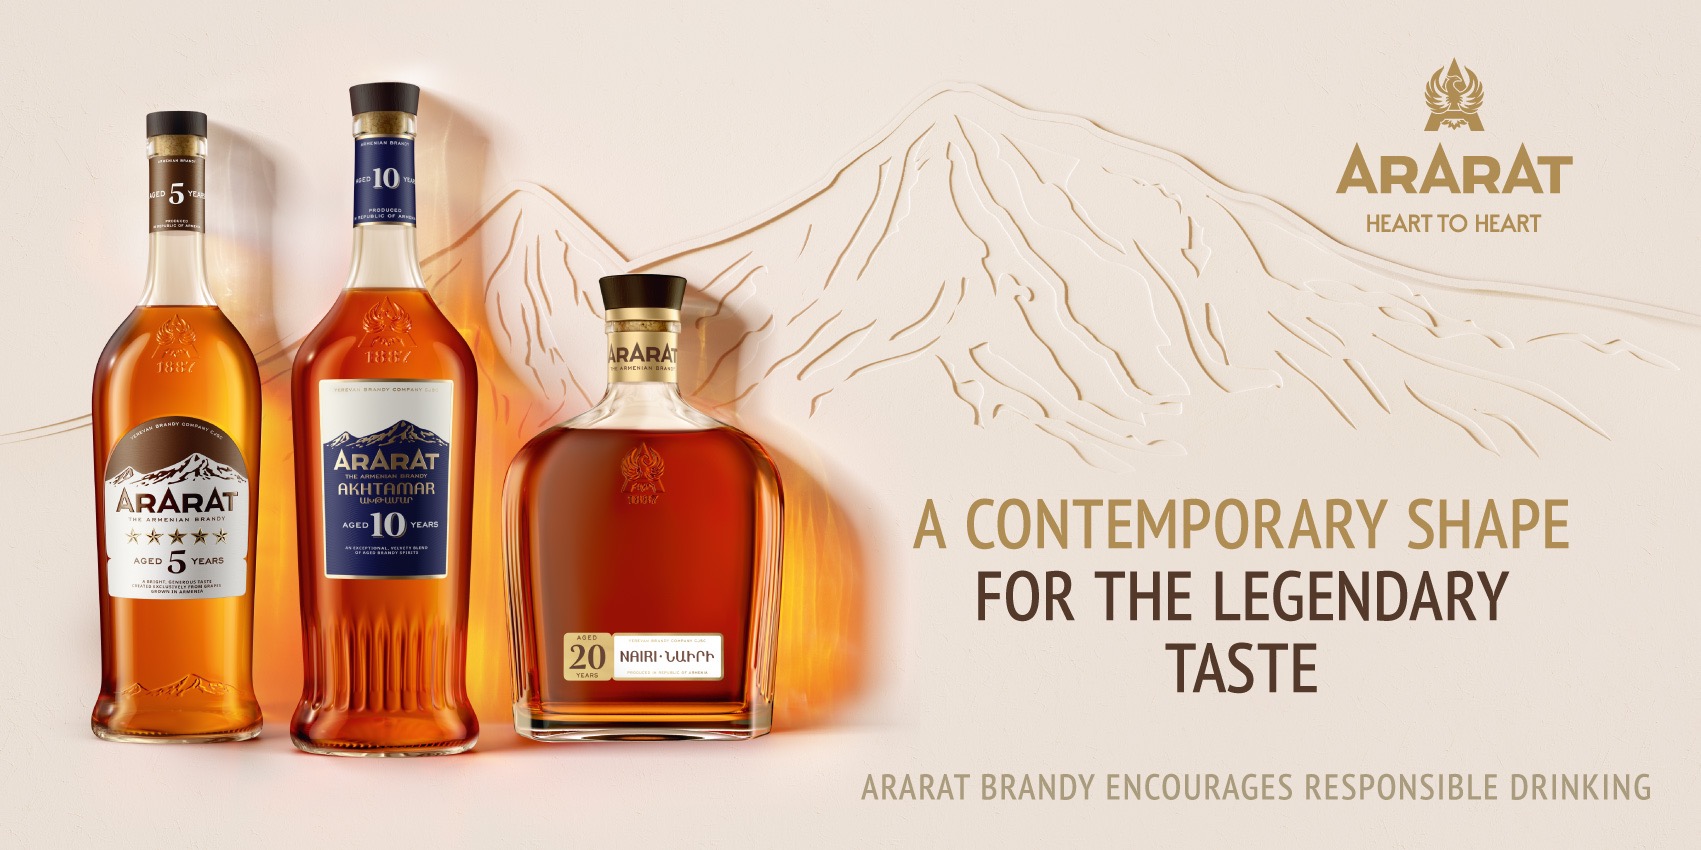 ARARAT проведёт редизайн продукции: новые бутылки и упаковка легендарного коньяка